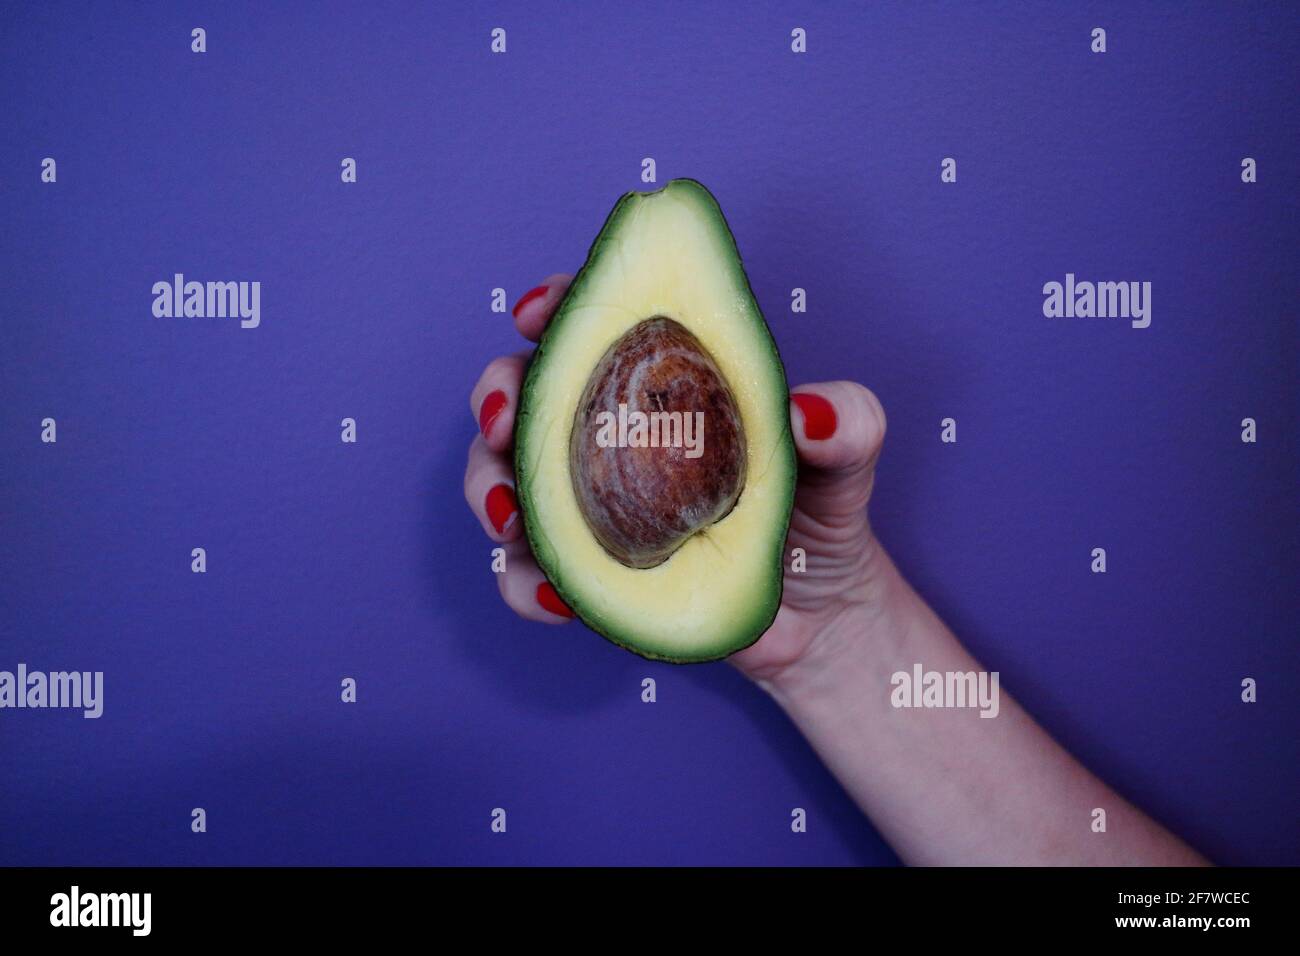 Nahaufnahme der Hand einer Frau mit rot lackiertem Finger Nägel halten eine halbgeschnittene Avocado gegen den violetten Hintergrund Stockfoto